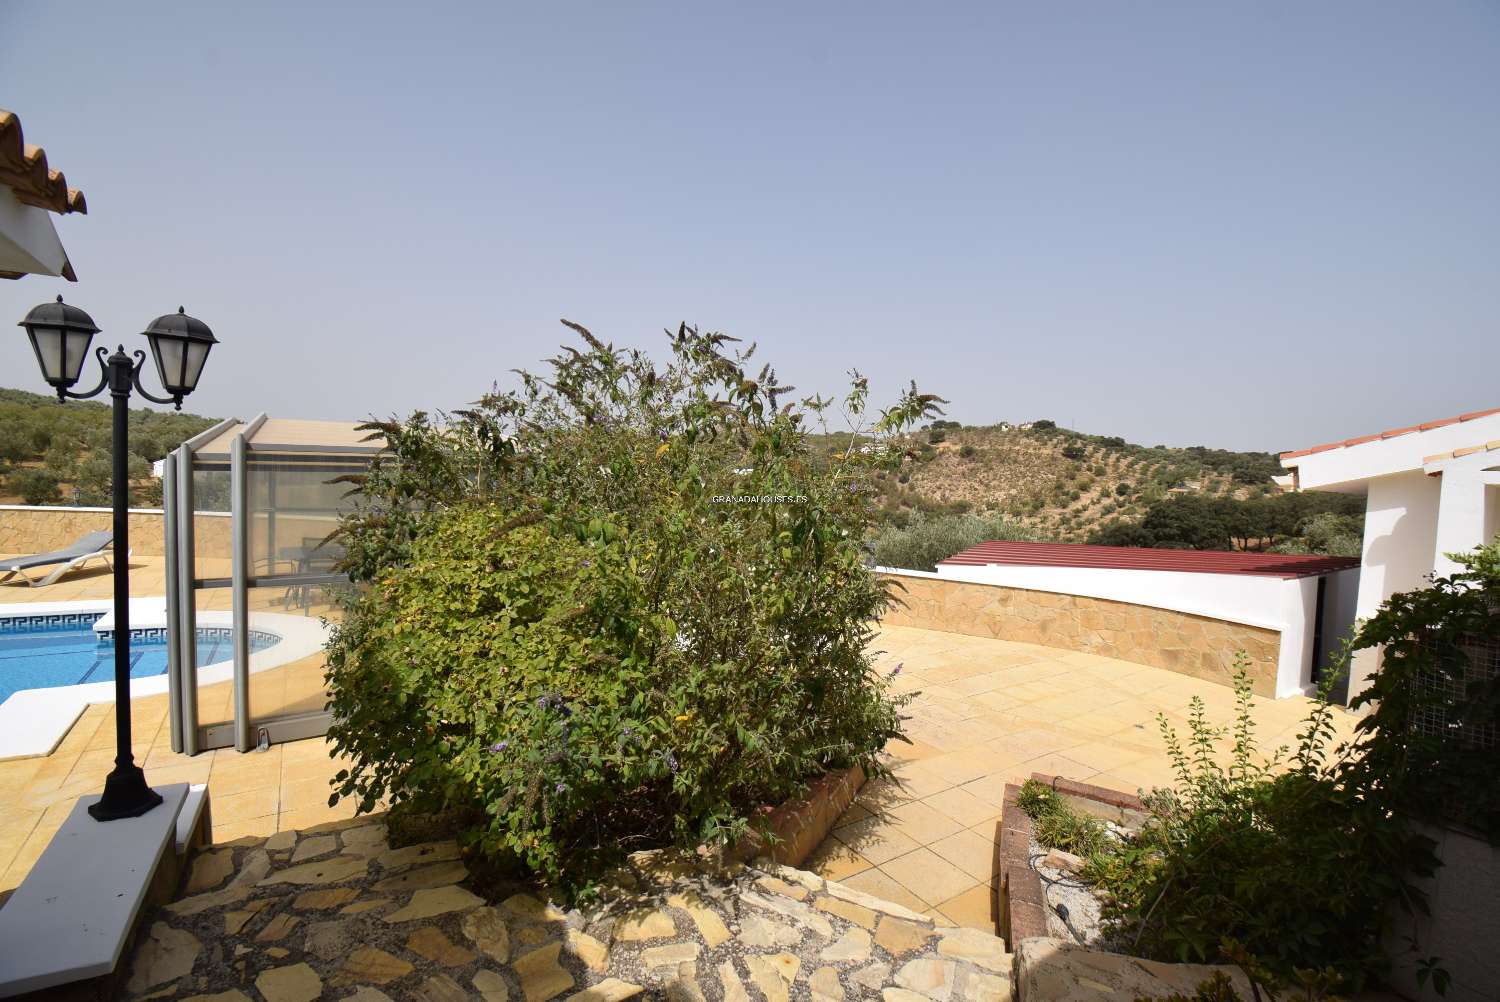 Fantástica villa de campo con anexo, jardín, gran piscina e impresionantes vistas a la montaña.